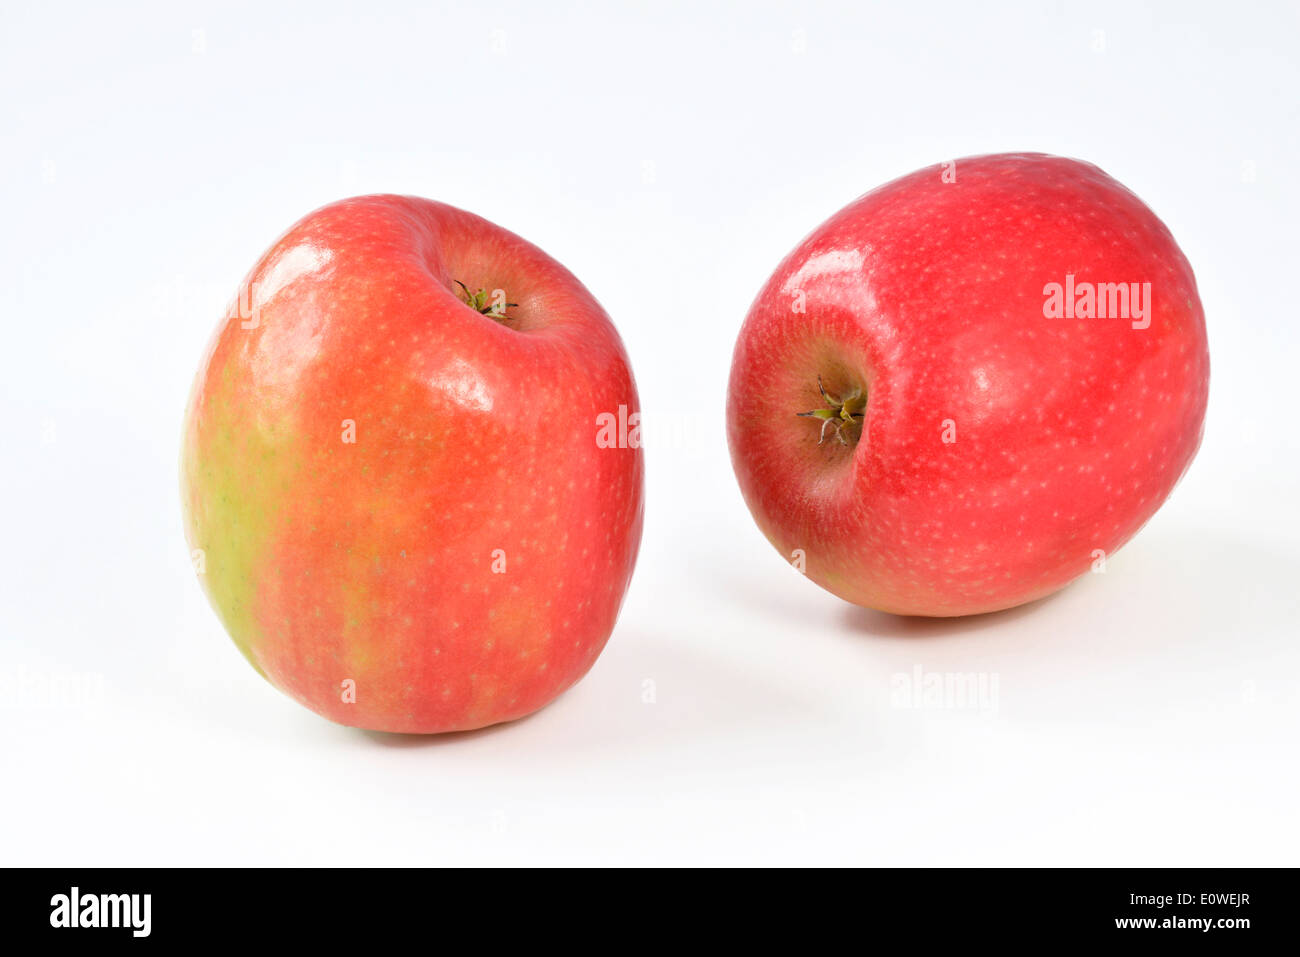 Cripps Pink apple (Malus domestica Cripps Pink). Il nome alternativo è Pink  Lady apple. Immagine di Apple singolo isolato su sfondo bianco Foto stock -  Alamy